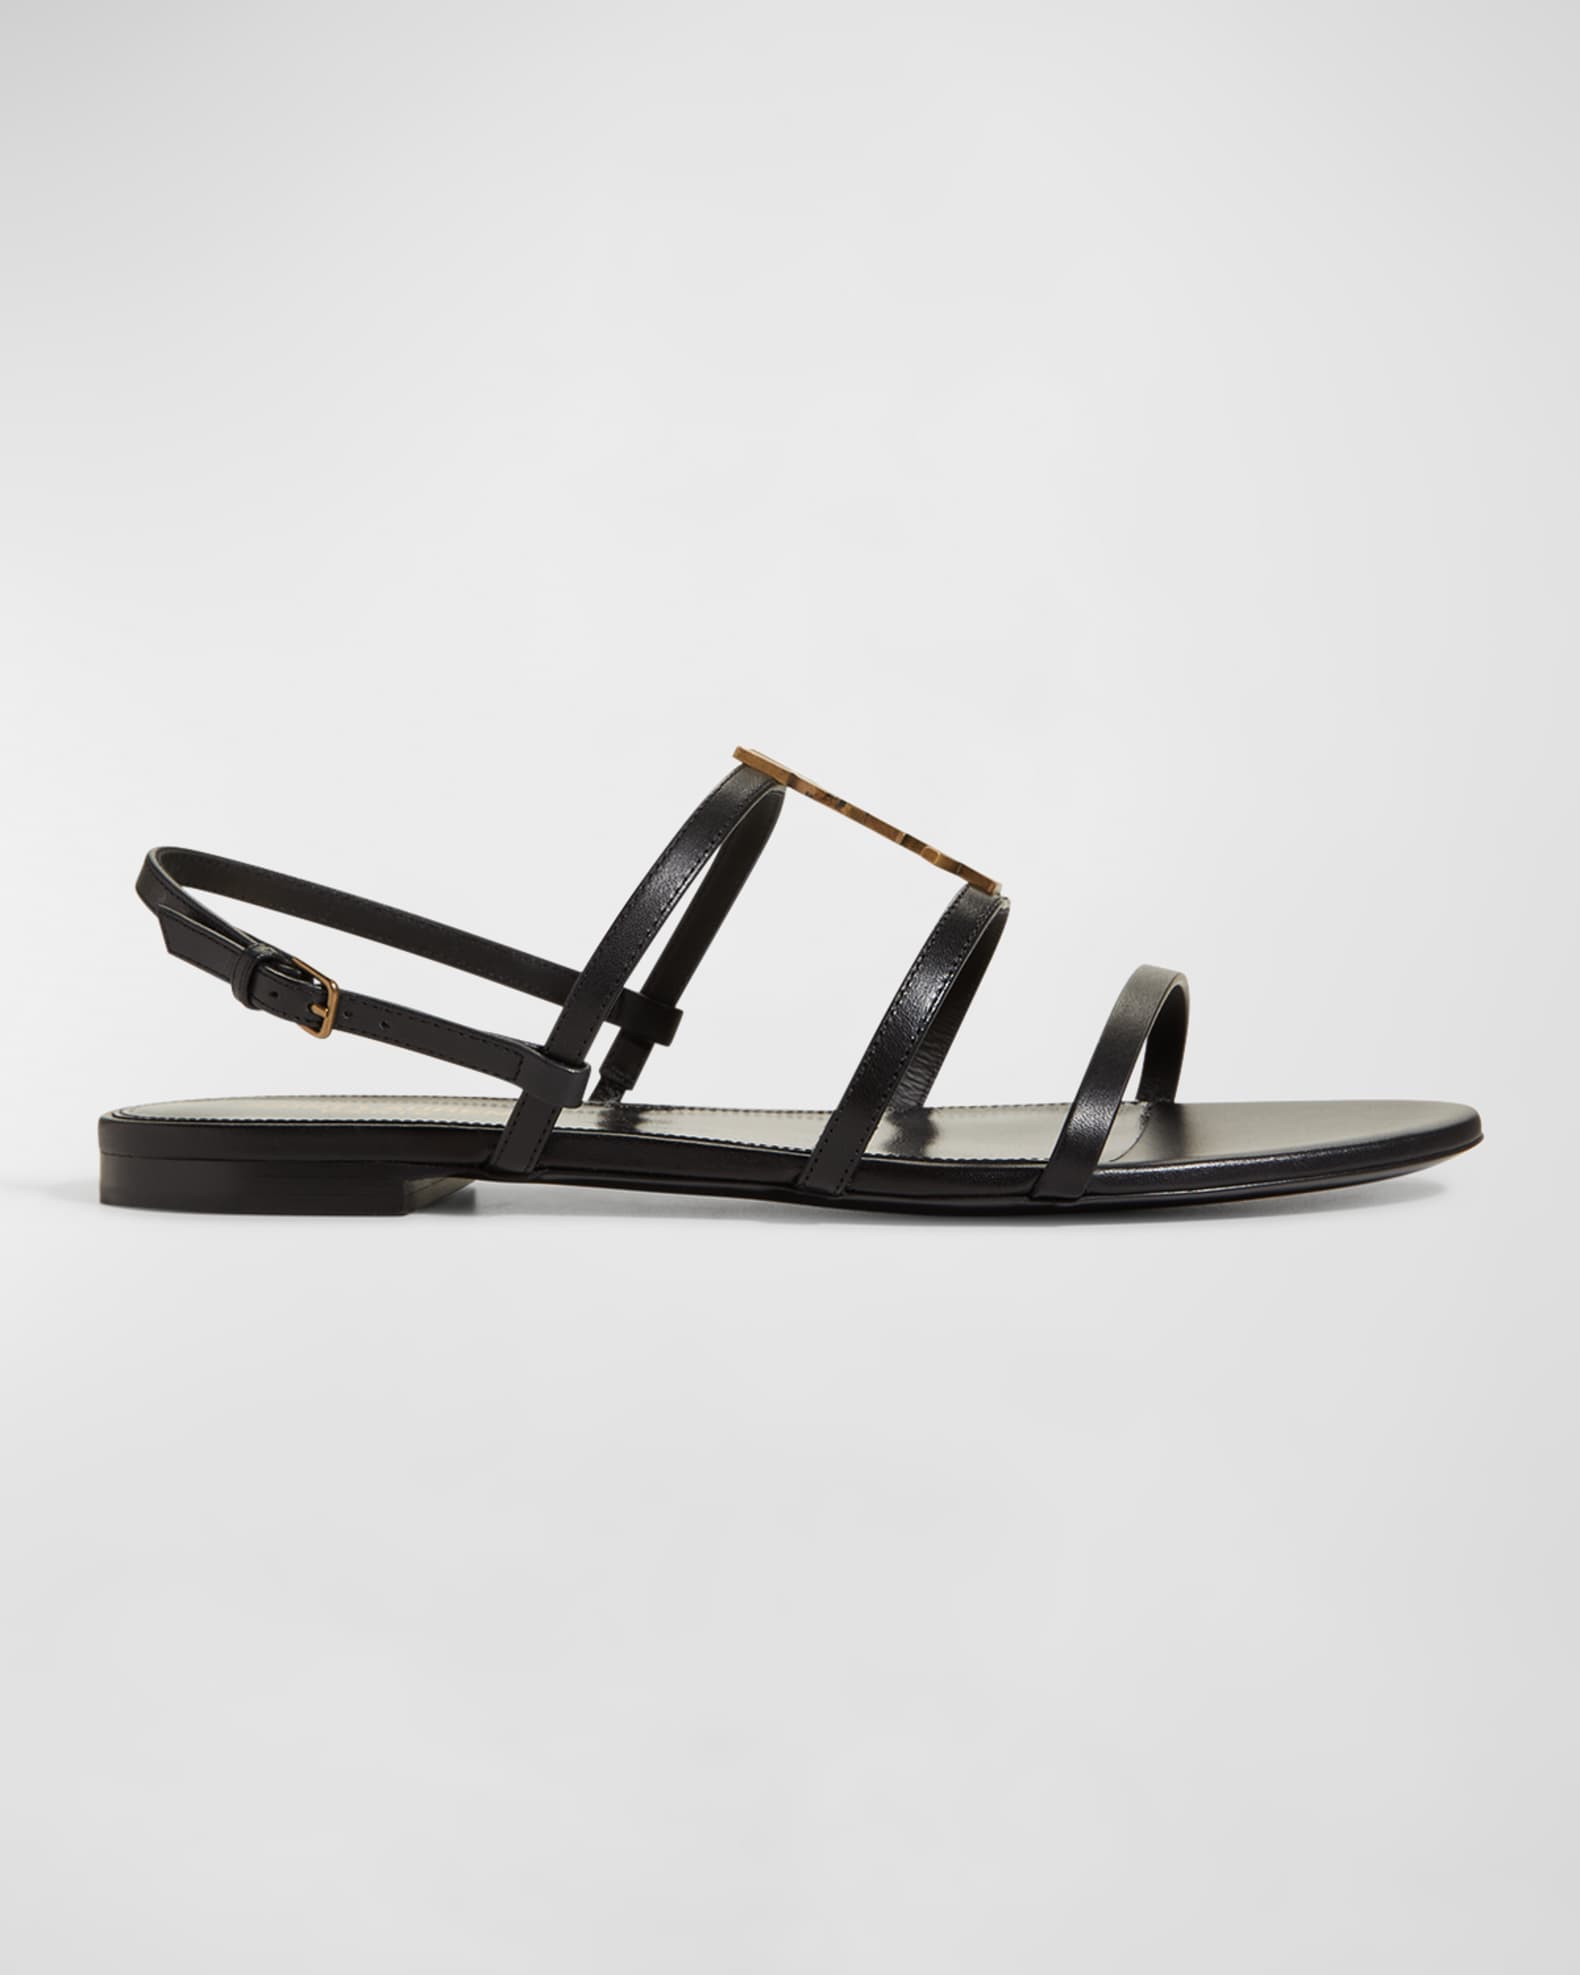 Louis Vuitton Black Canvas Flat Thong Sandals Size 9.5/40